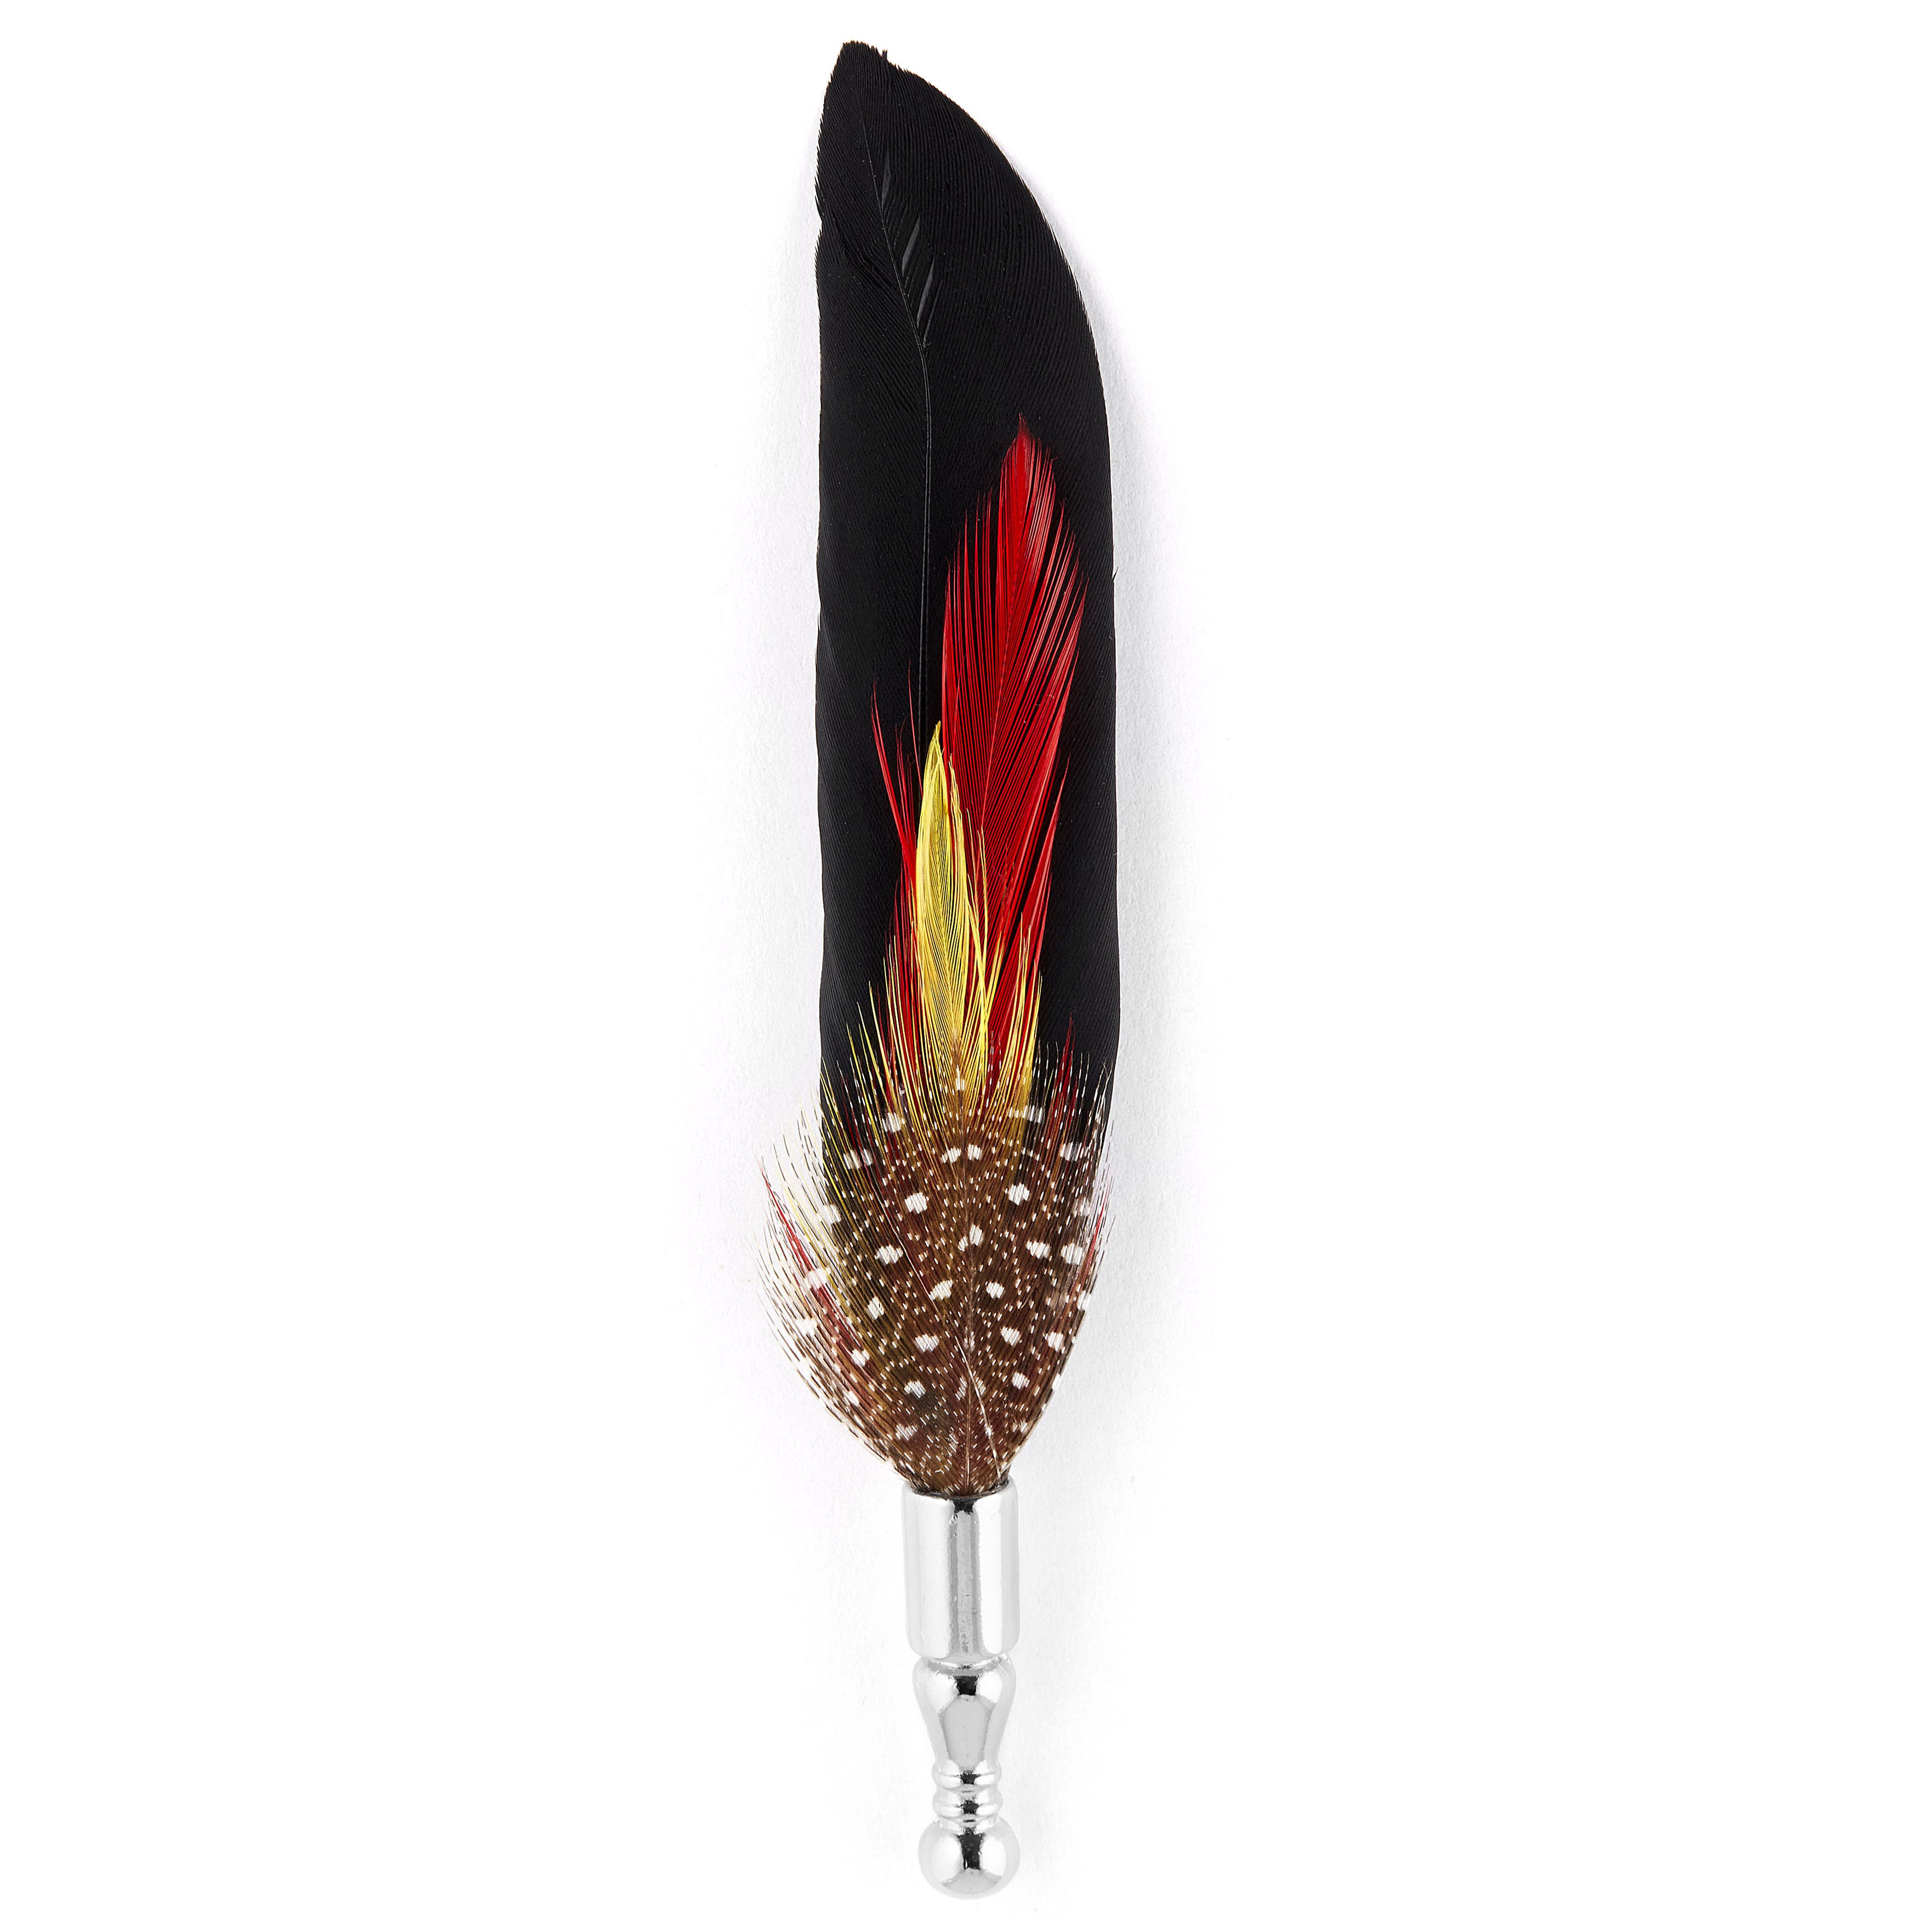 Špendlík do klopy Tribal Feather 